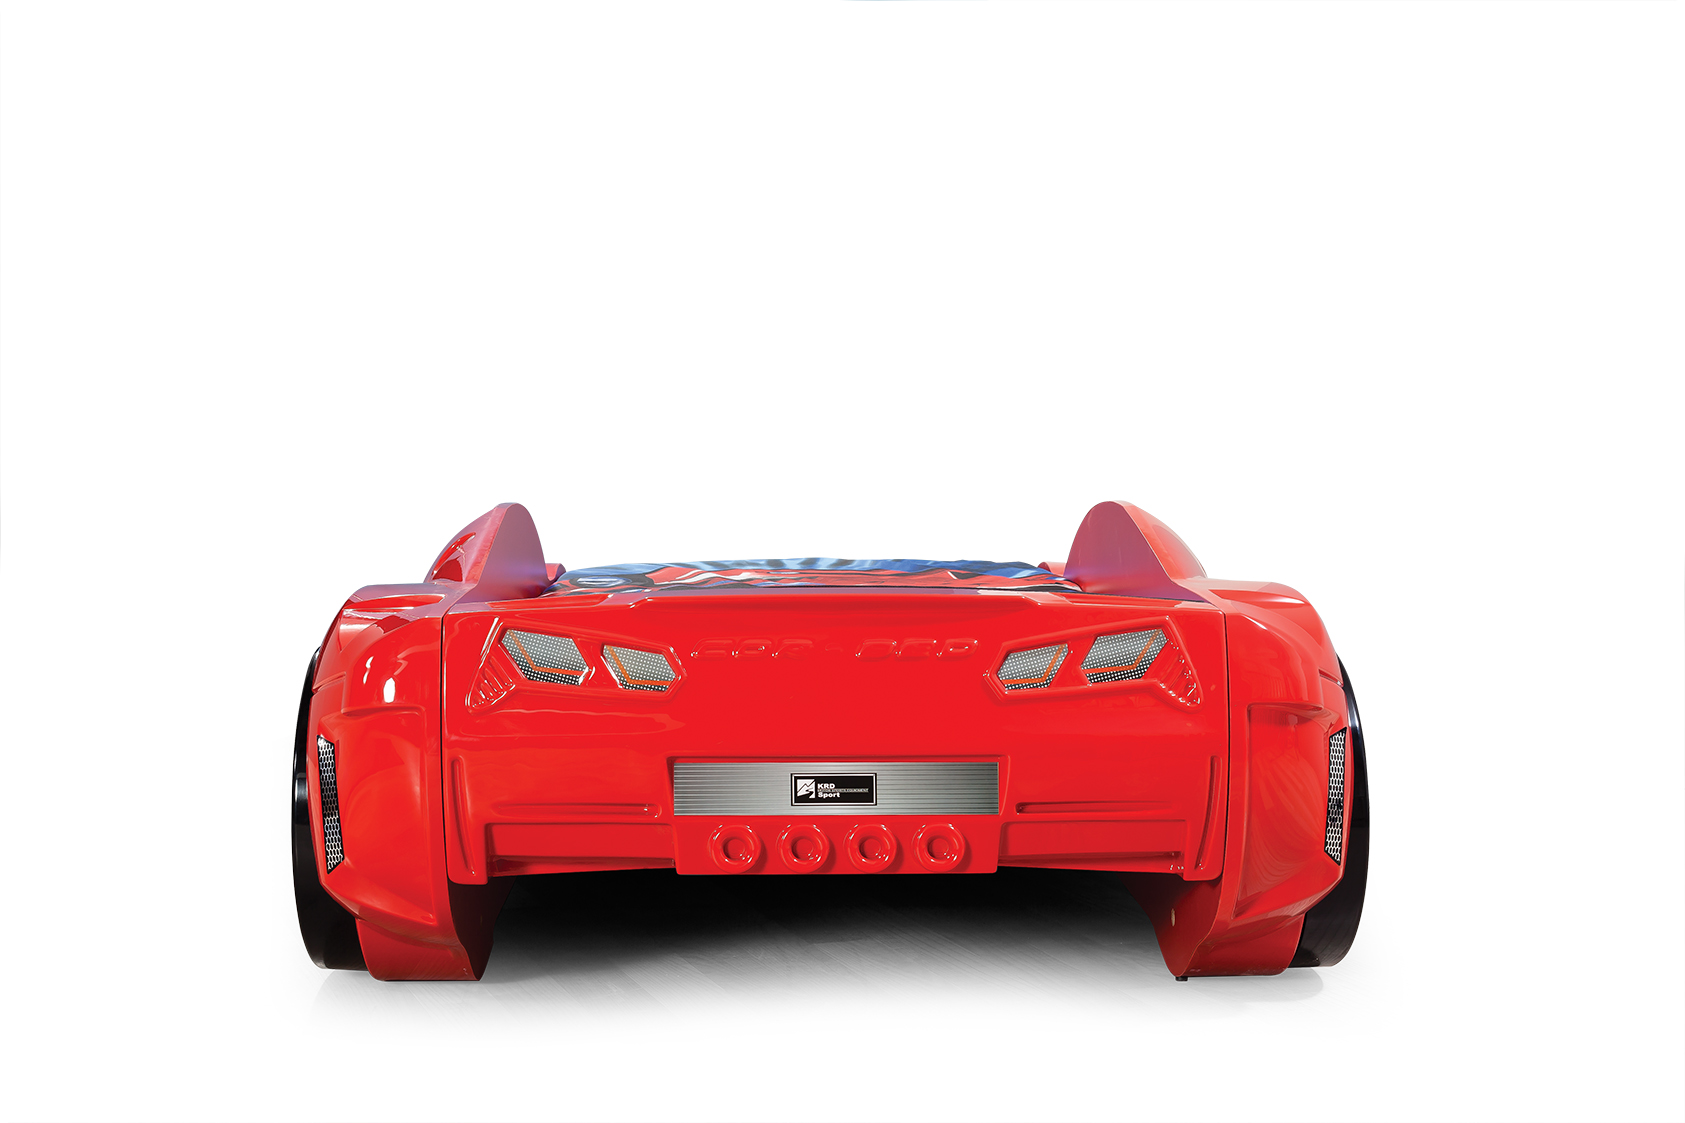 Autobett Luxury Standard in Rot mit LED Scheinwerfern und Sound